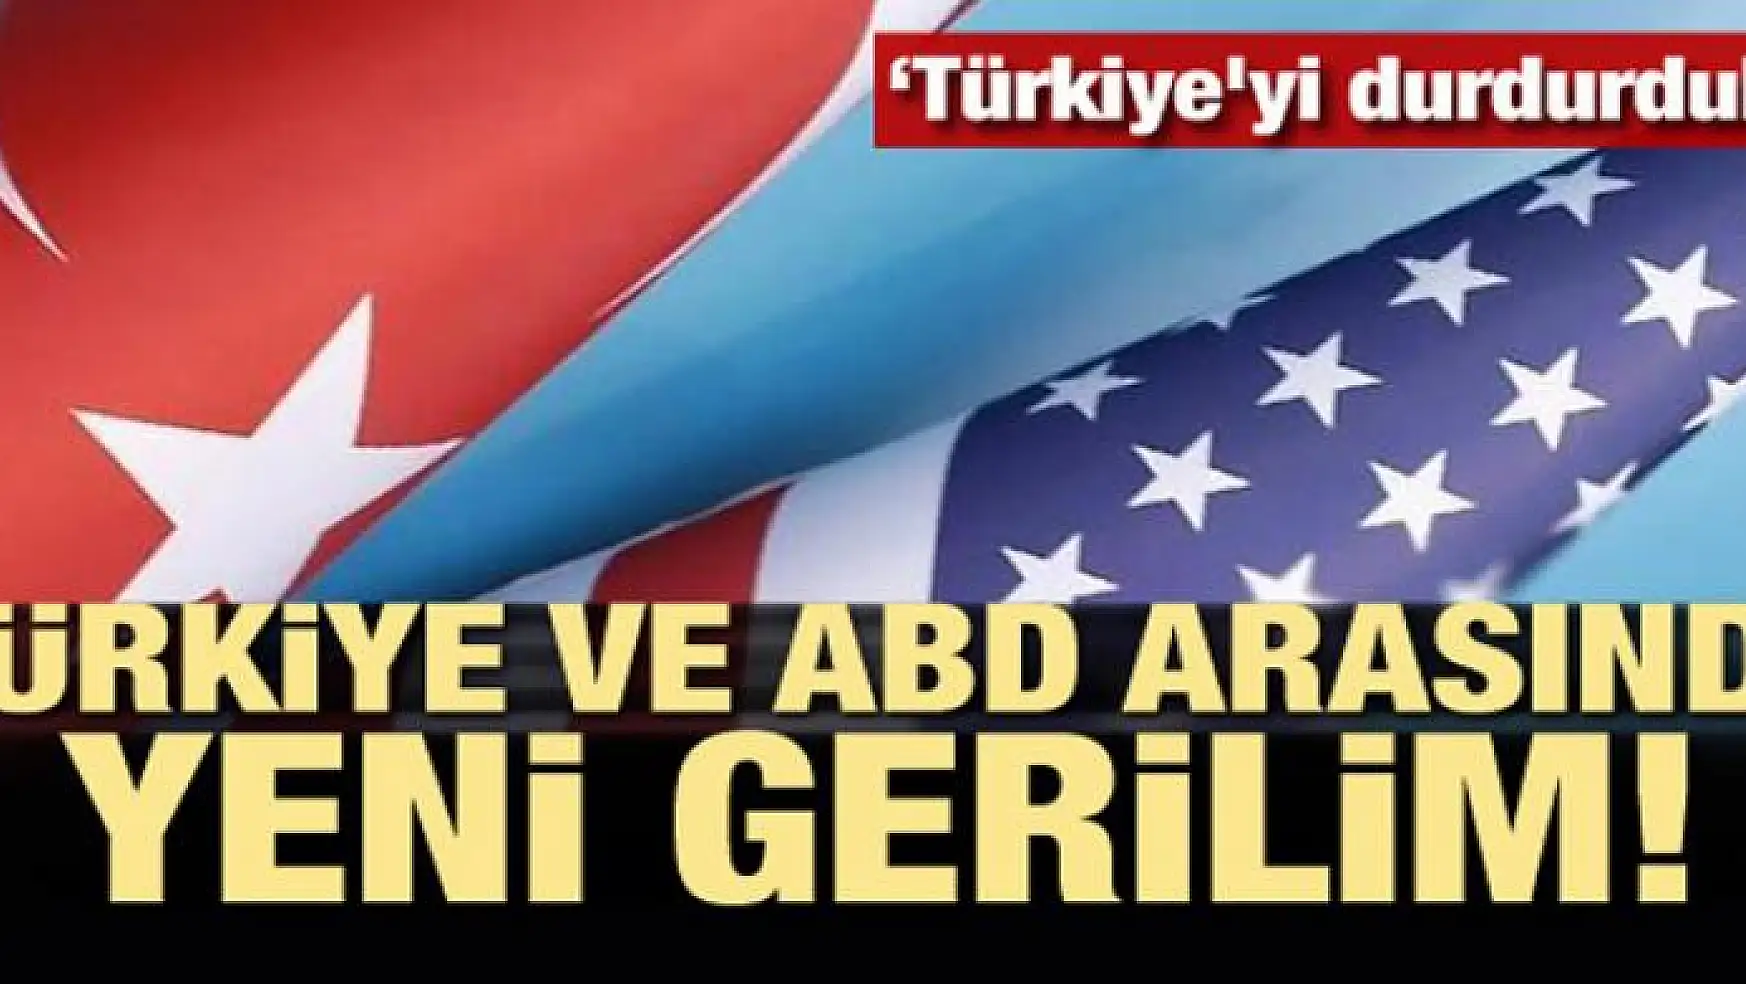 Türkiye ve ABD arasında yeni gerilim! 'Türkiye'yi durdurduk'